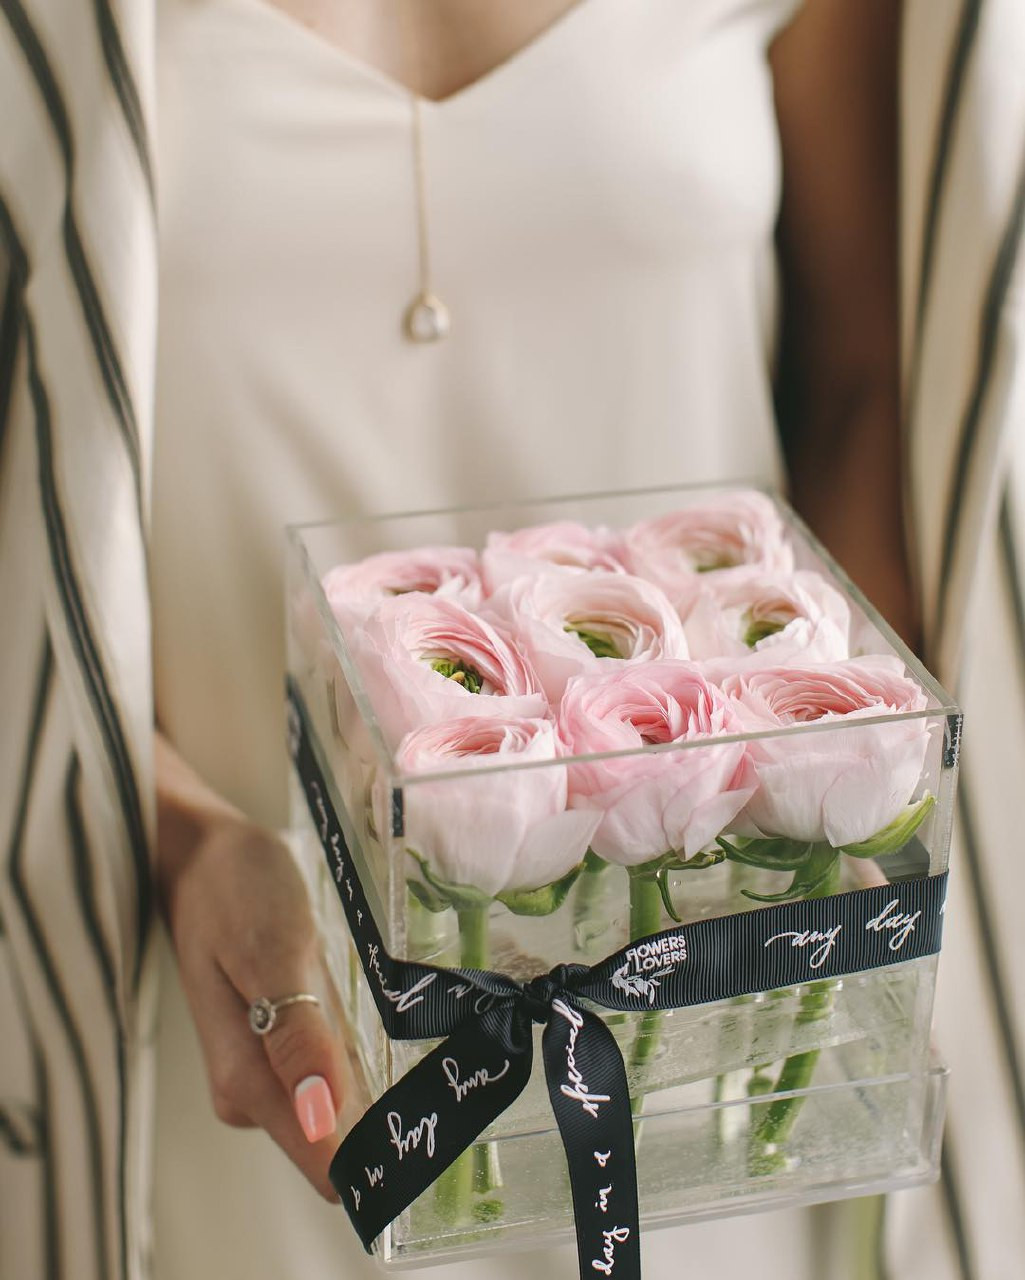 Купить цветы официальный сайт москва доставка цветов во владимире недорого